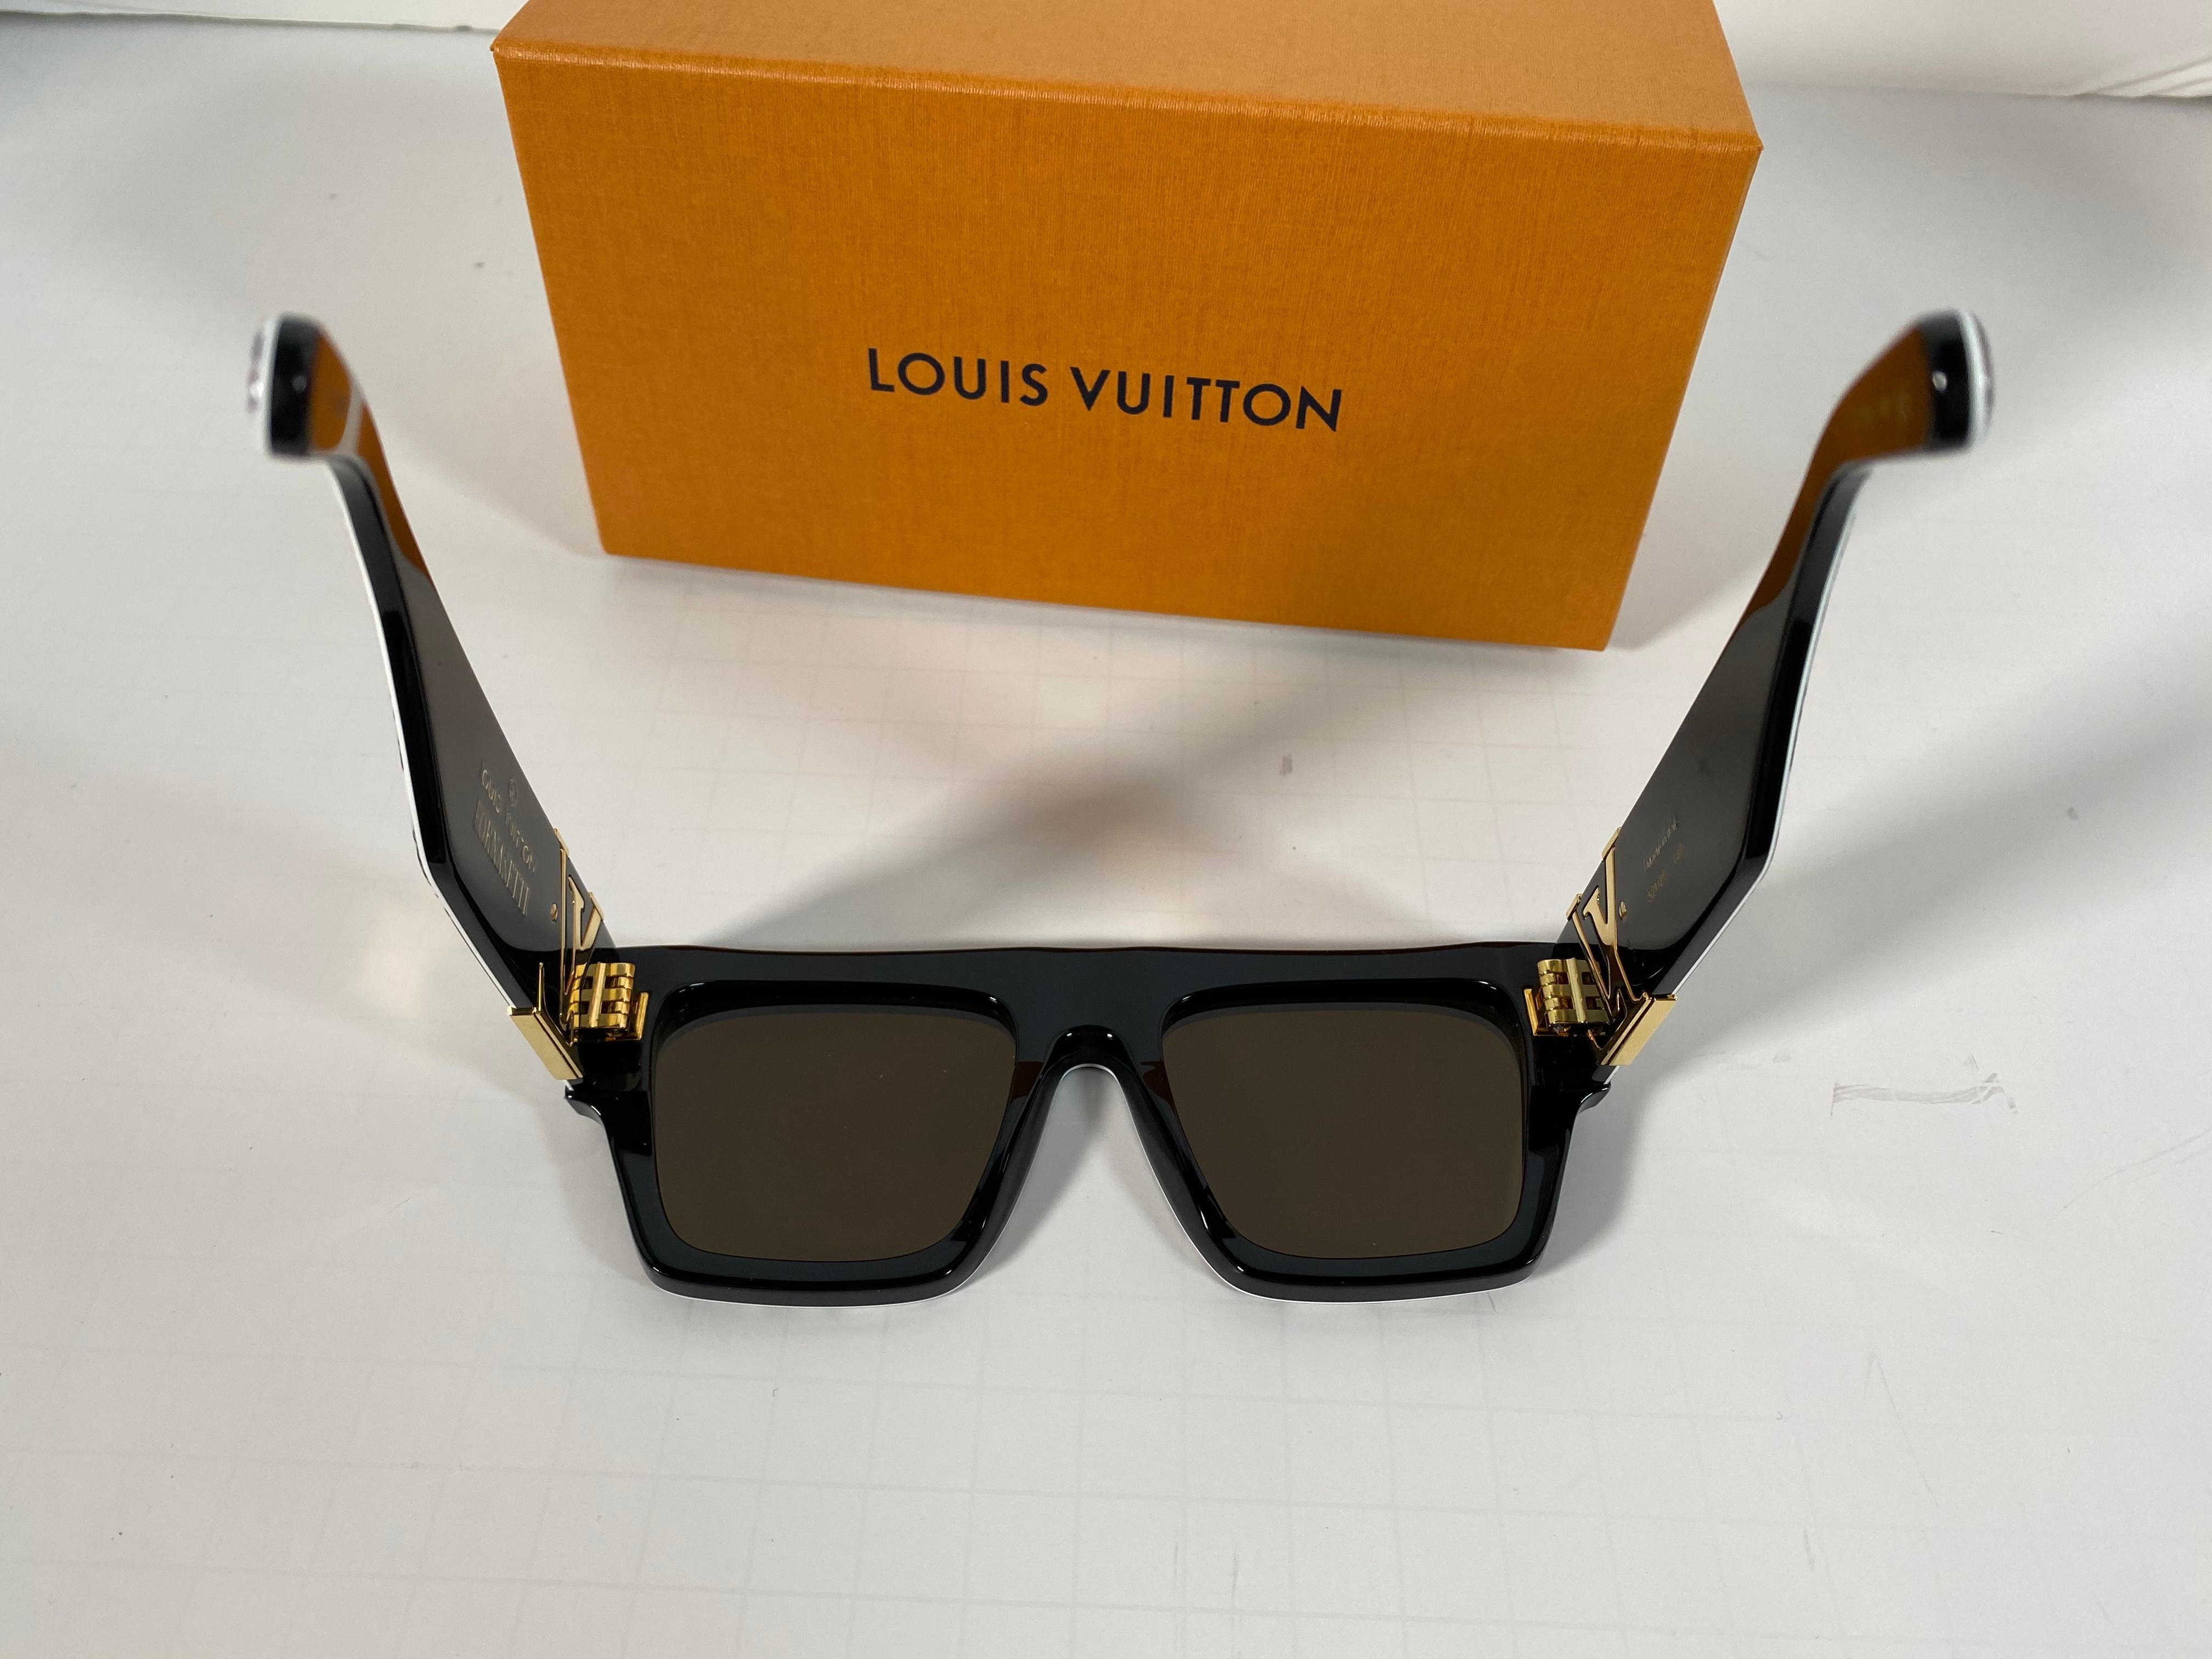 LOUIS VUITTON X Fornasetti Collaboration Sunglasses  NEW 1